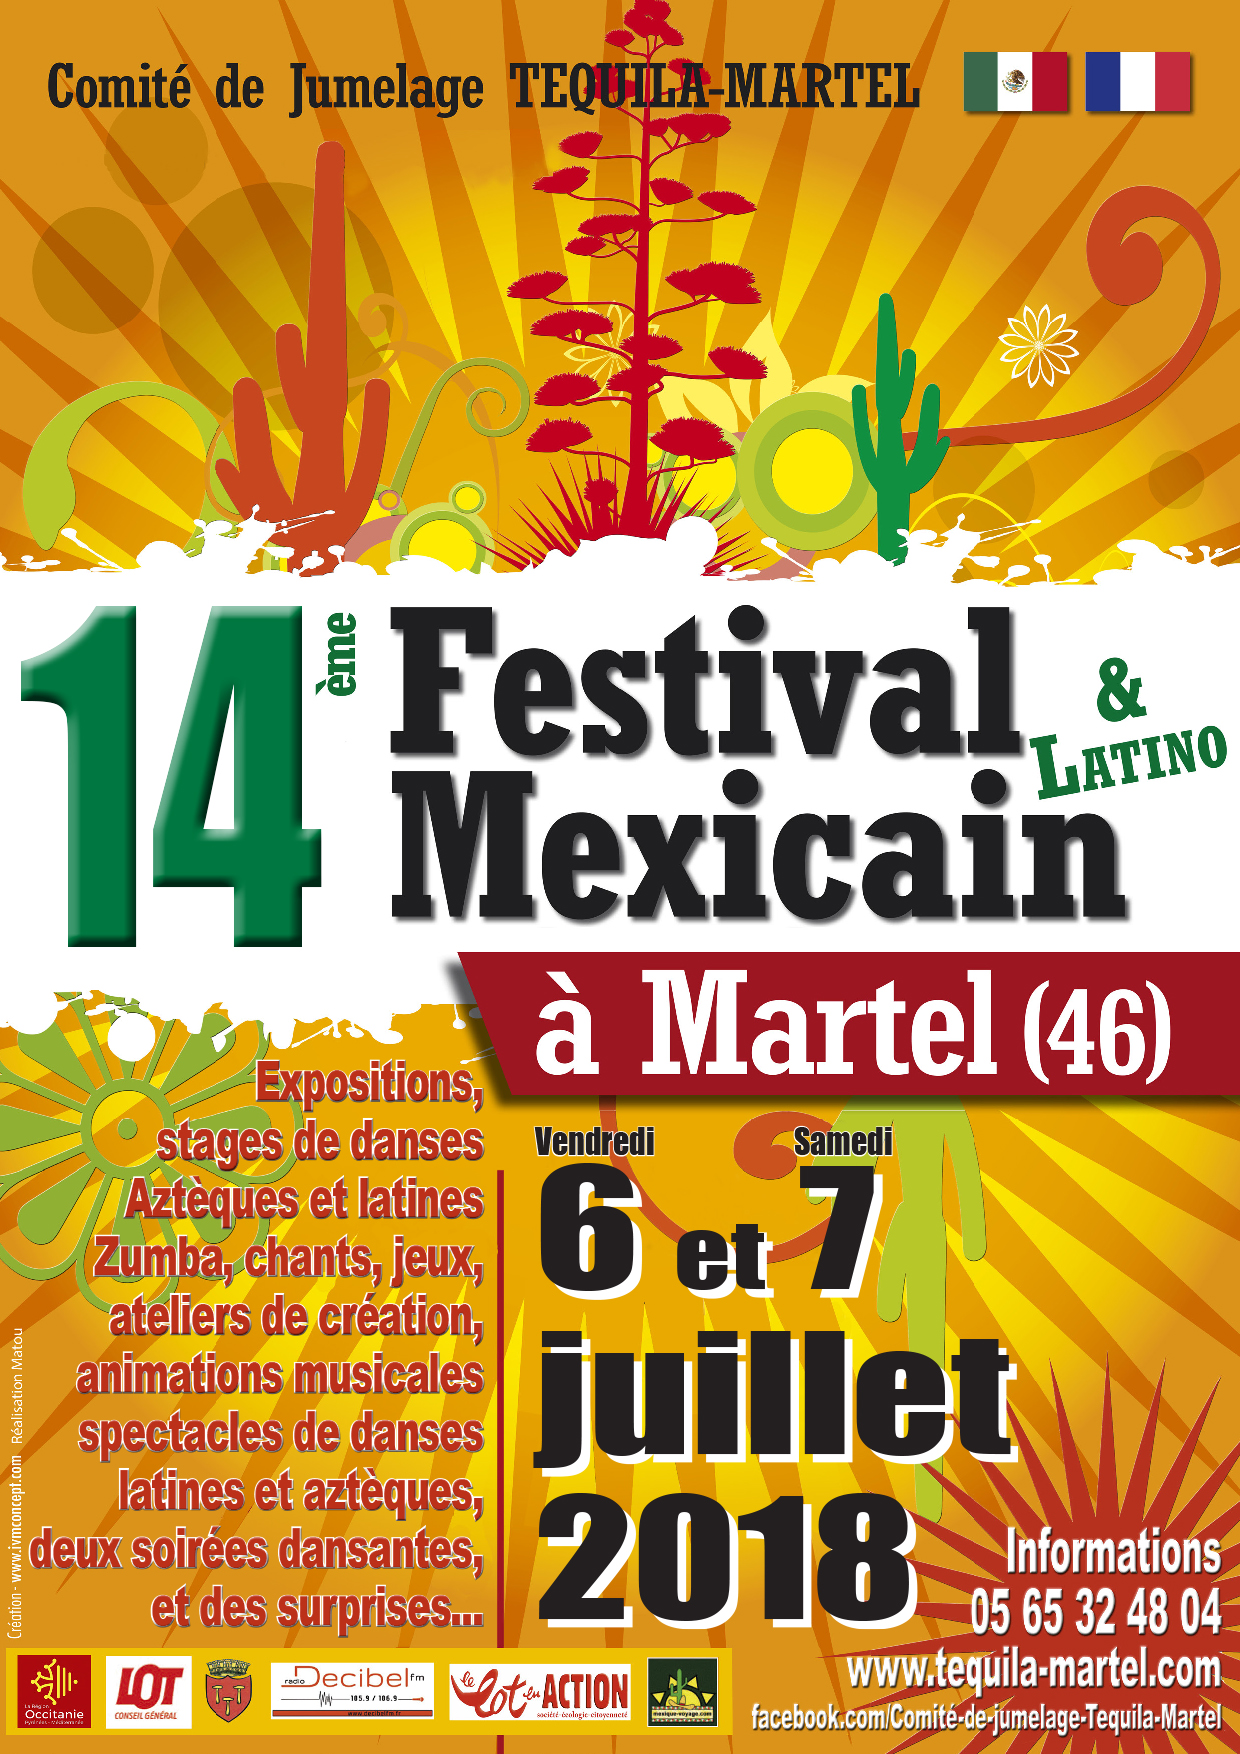 Festival Mexicain & Latino